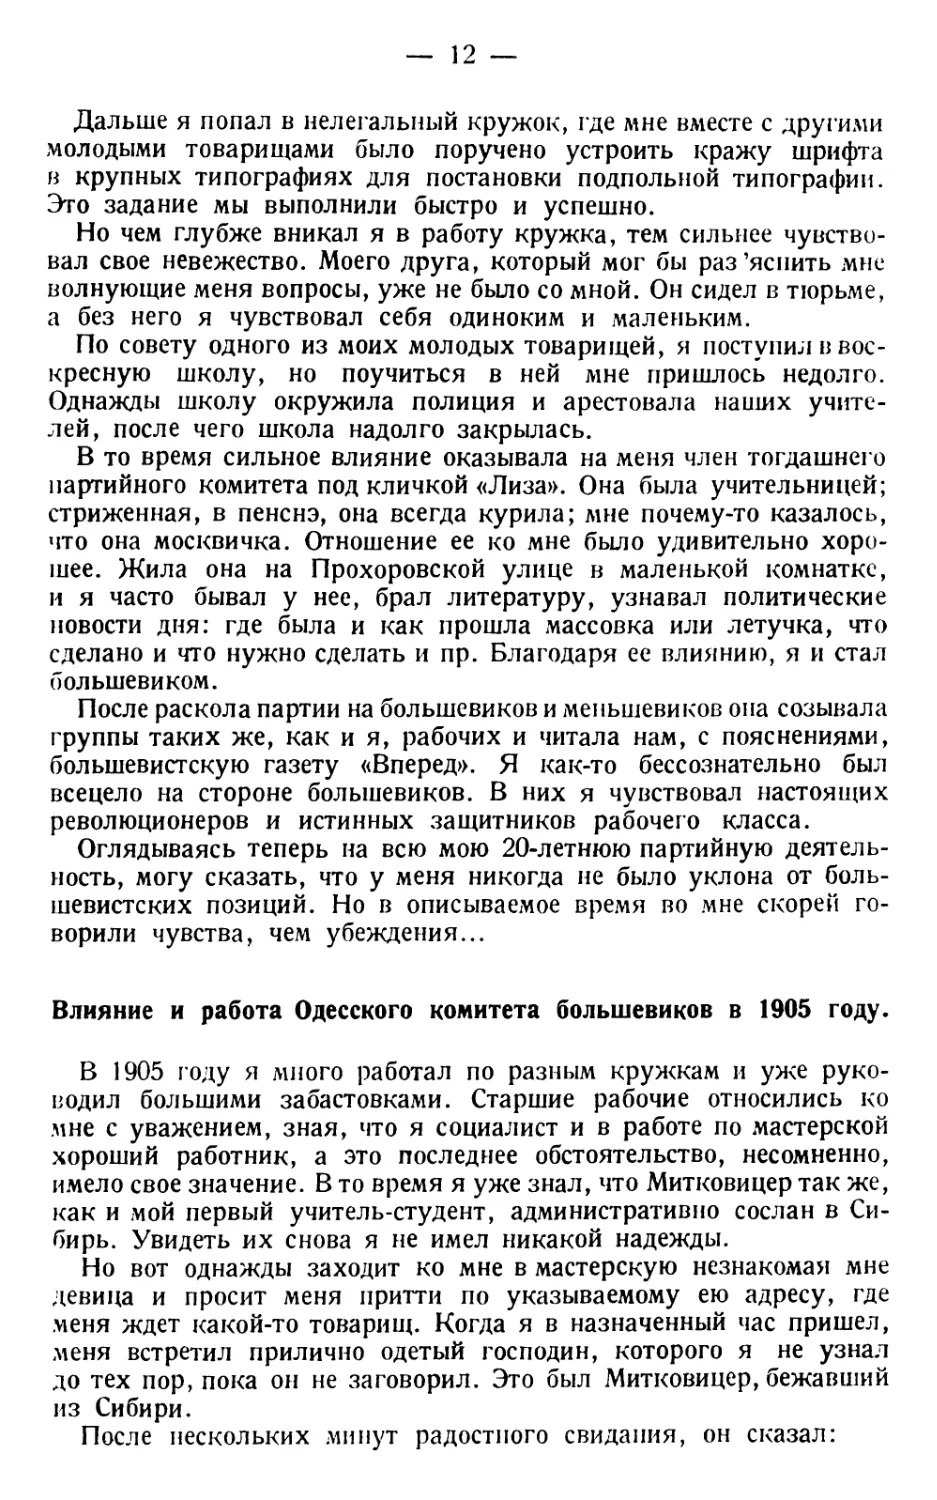 Влияние и работа одесского комитета большевиков в 1905 году